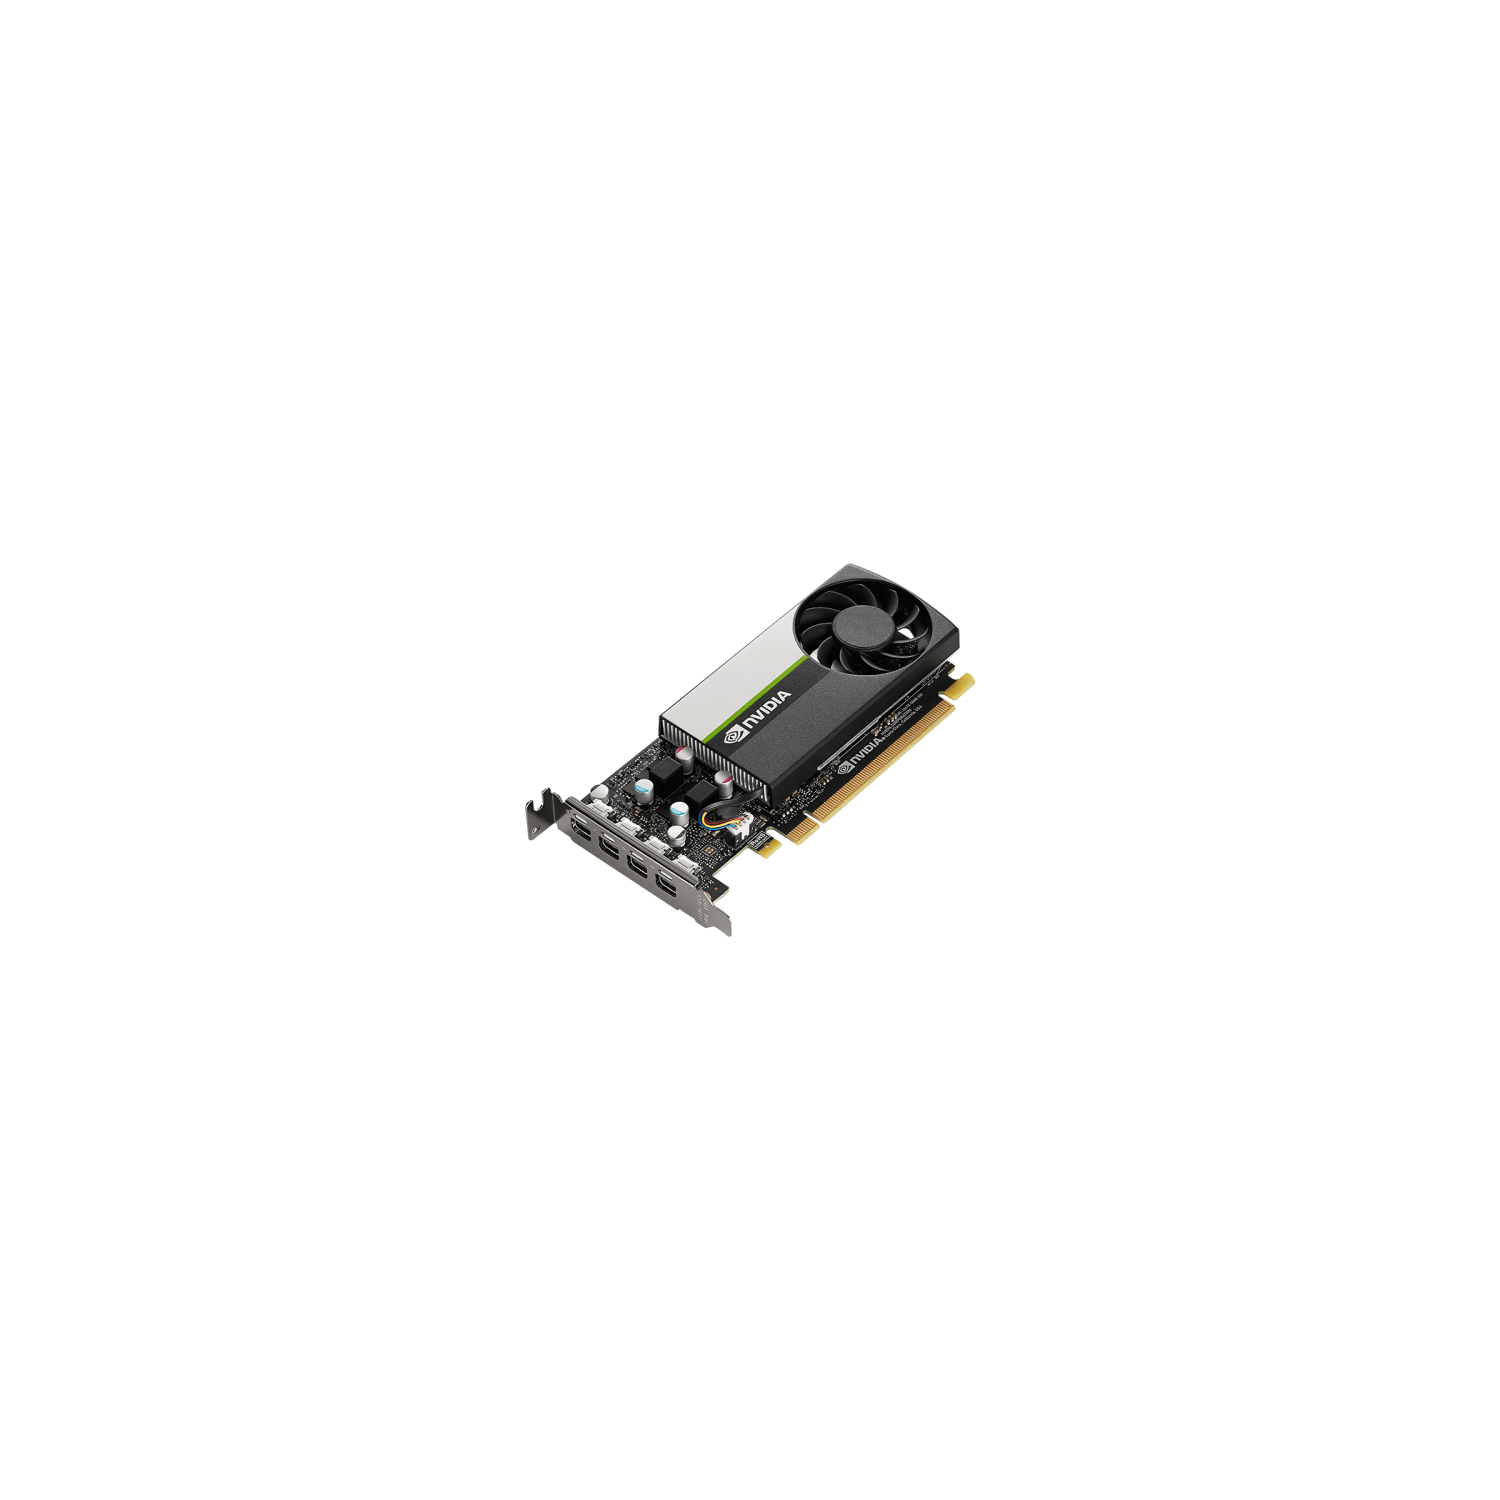 PNY Nvidia Quadro T1000 4GB GDDR6 PCI Express 3.0 60Hz Black Graphic Card (VCNT1000-SB)